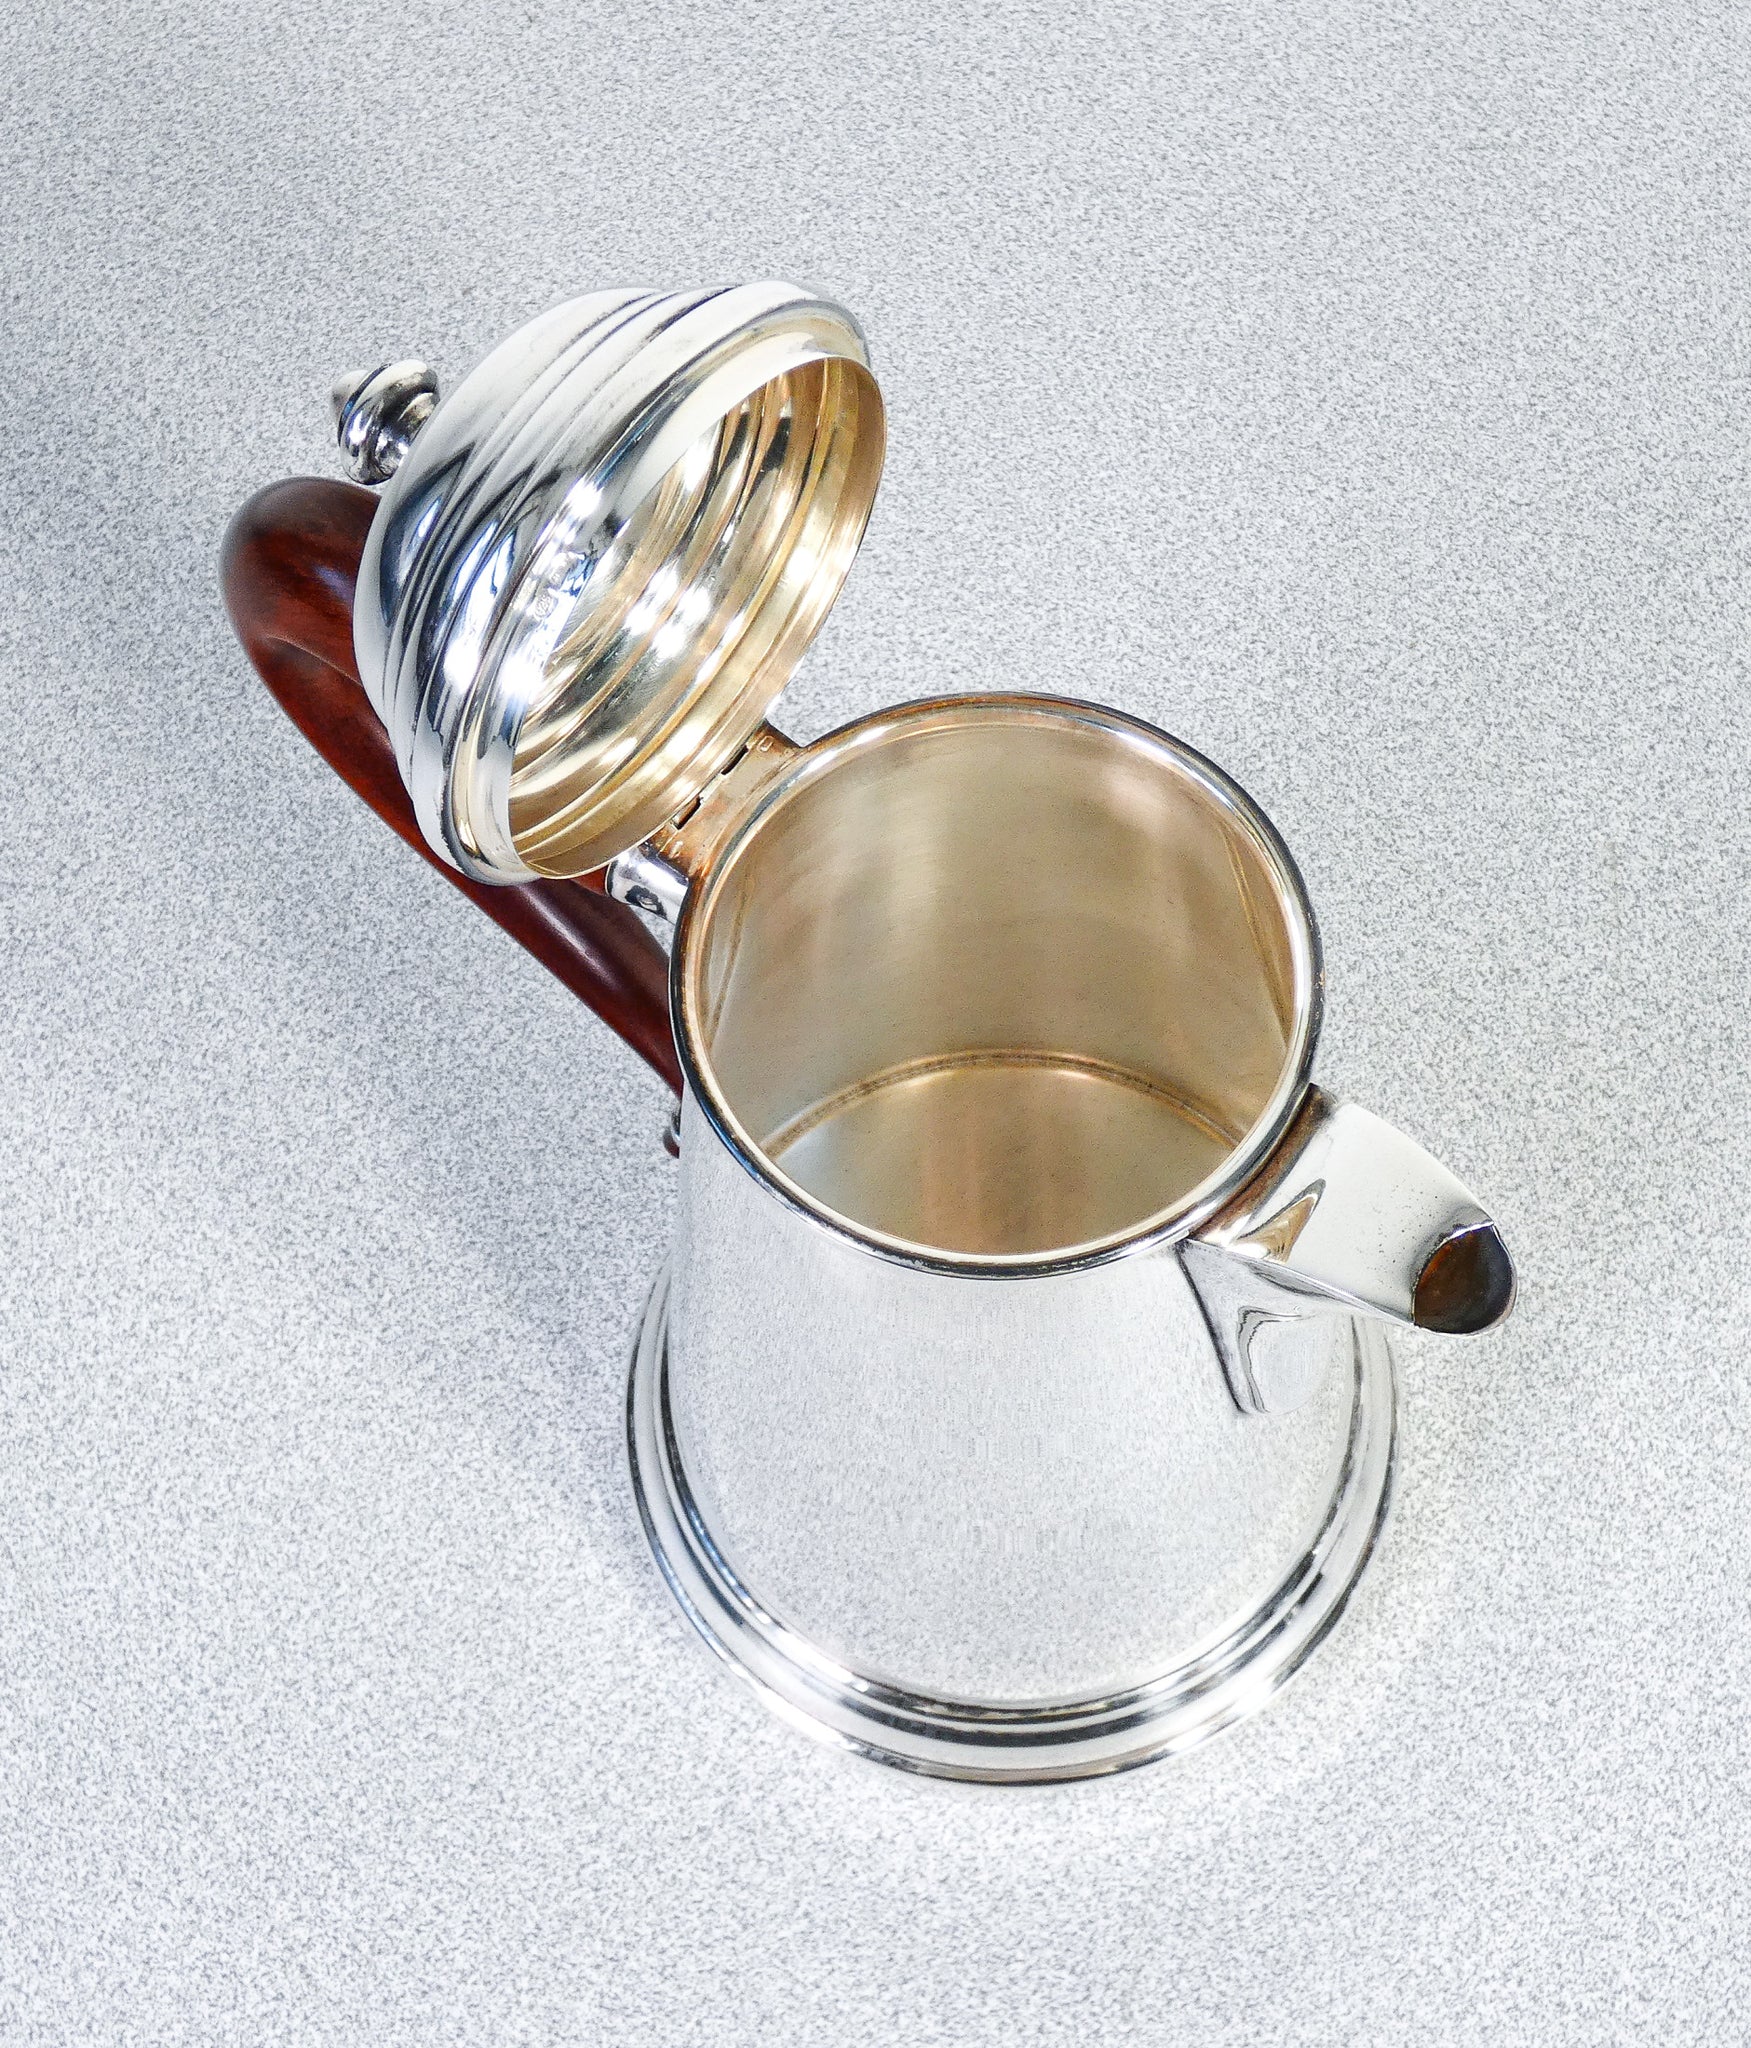 servizio argento sterling 925 legno flli calegaro te caffe caffettiera teiera